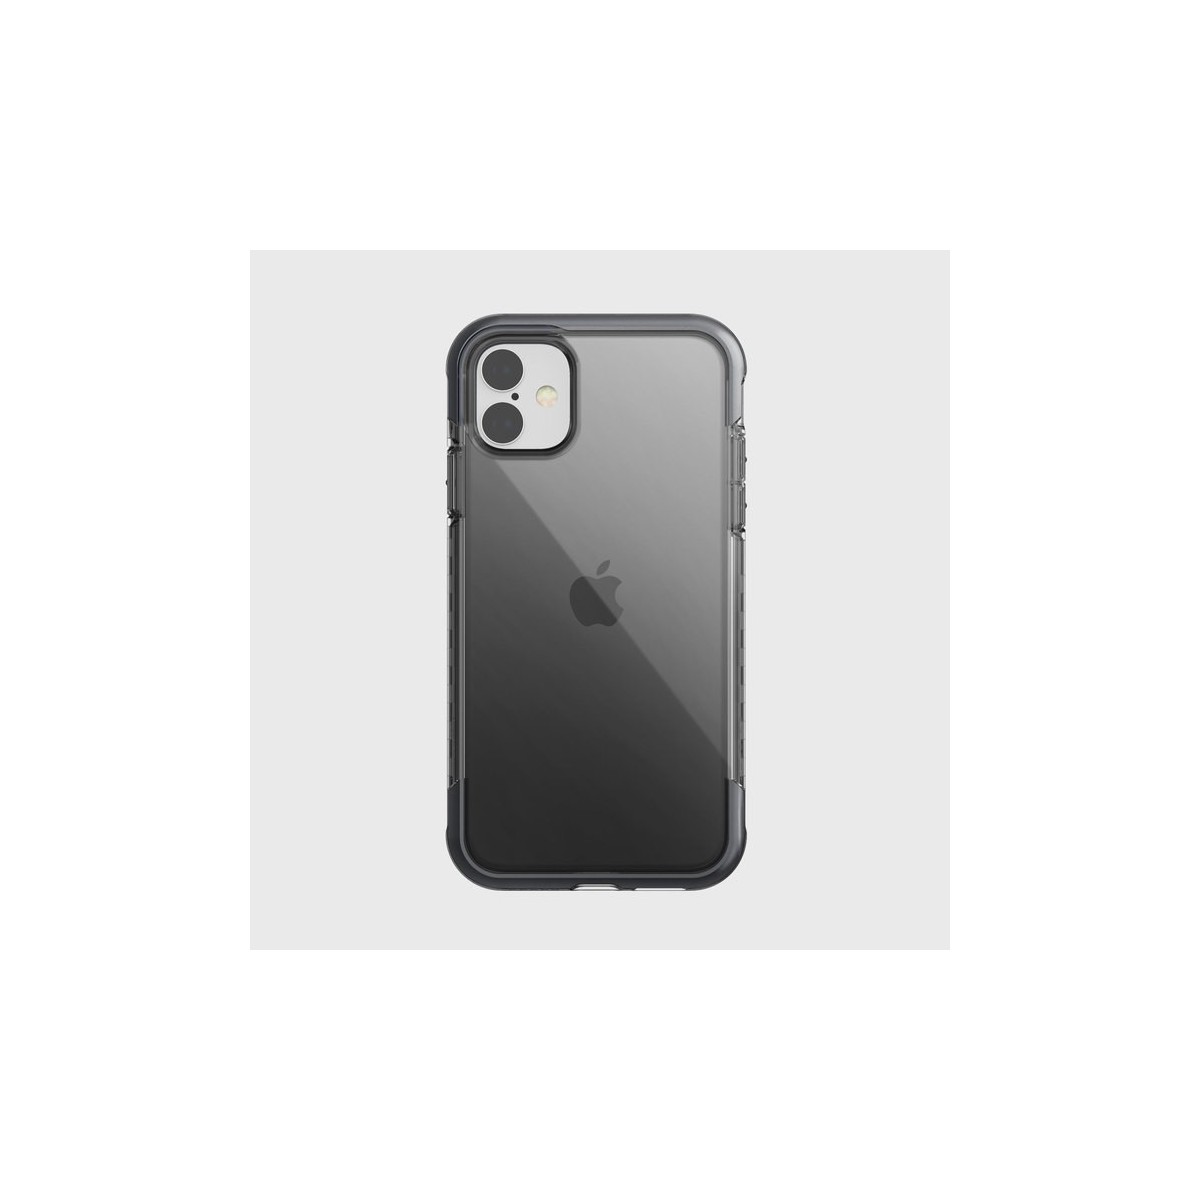 Coque iPhone Xs Max Defense Shield Noire - Xdoria